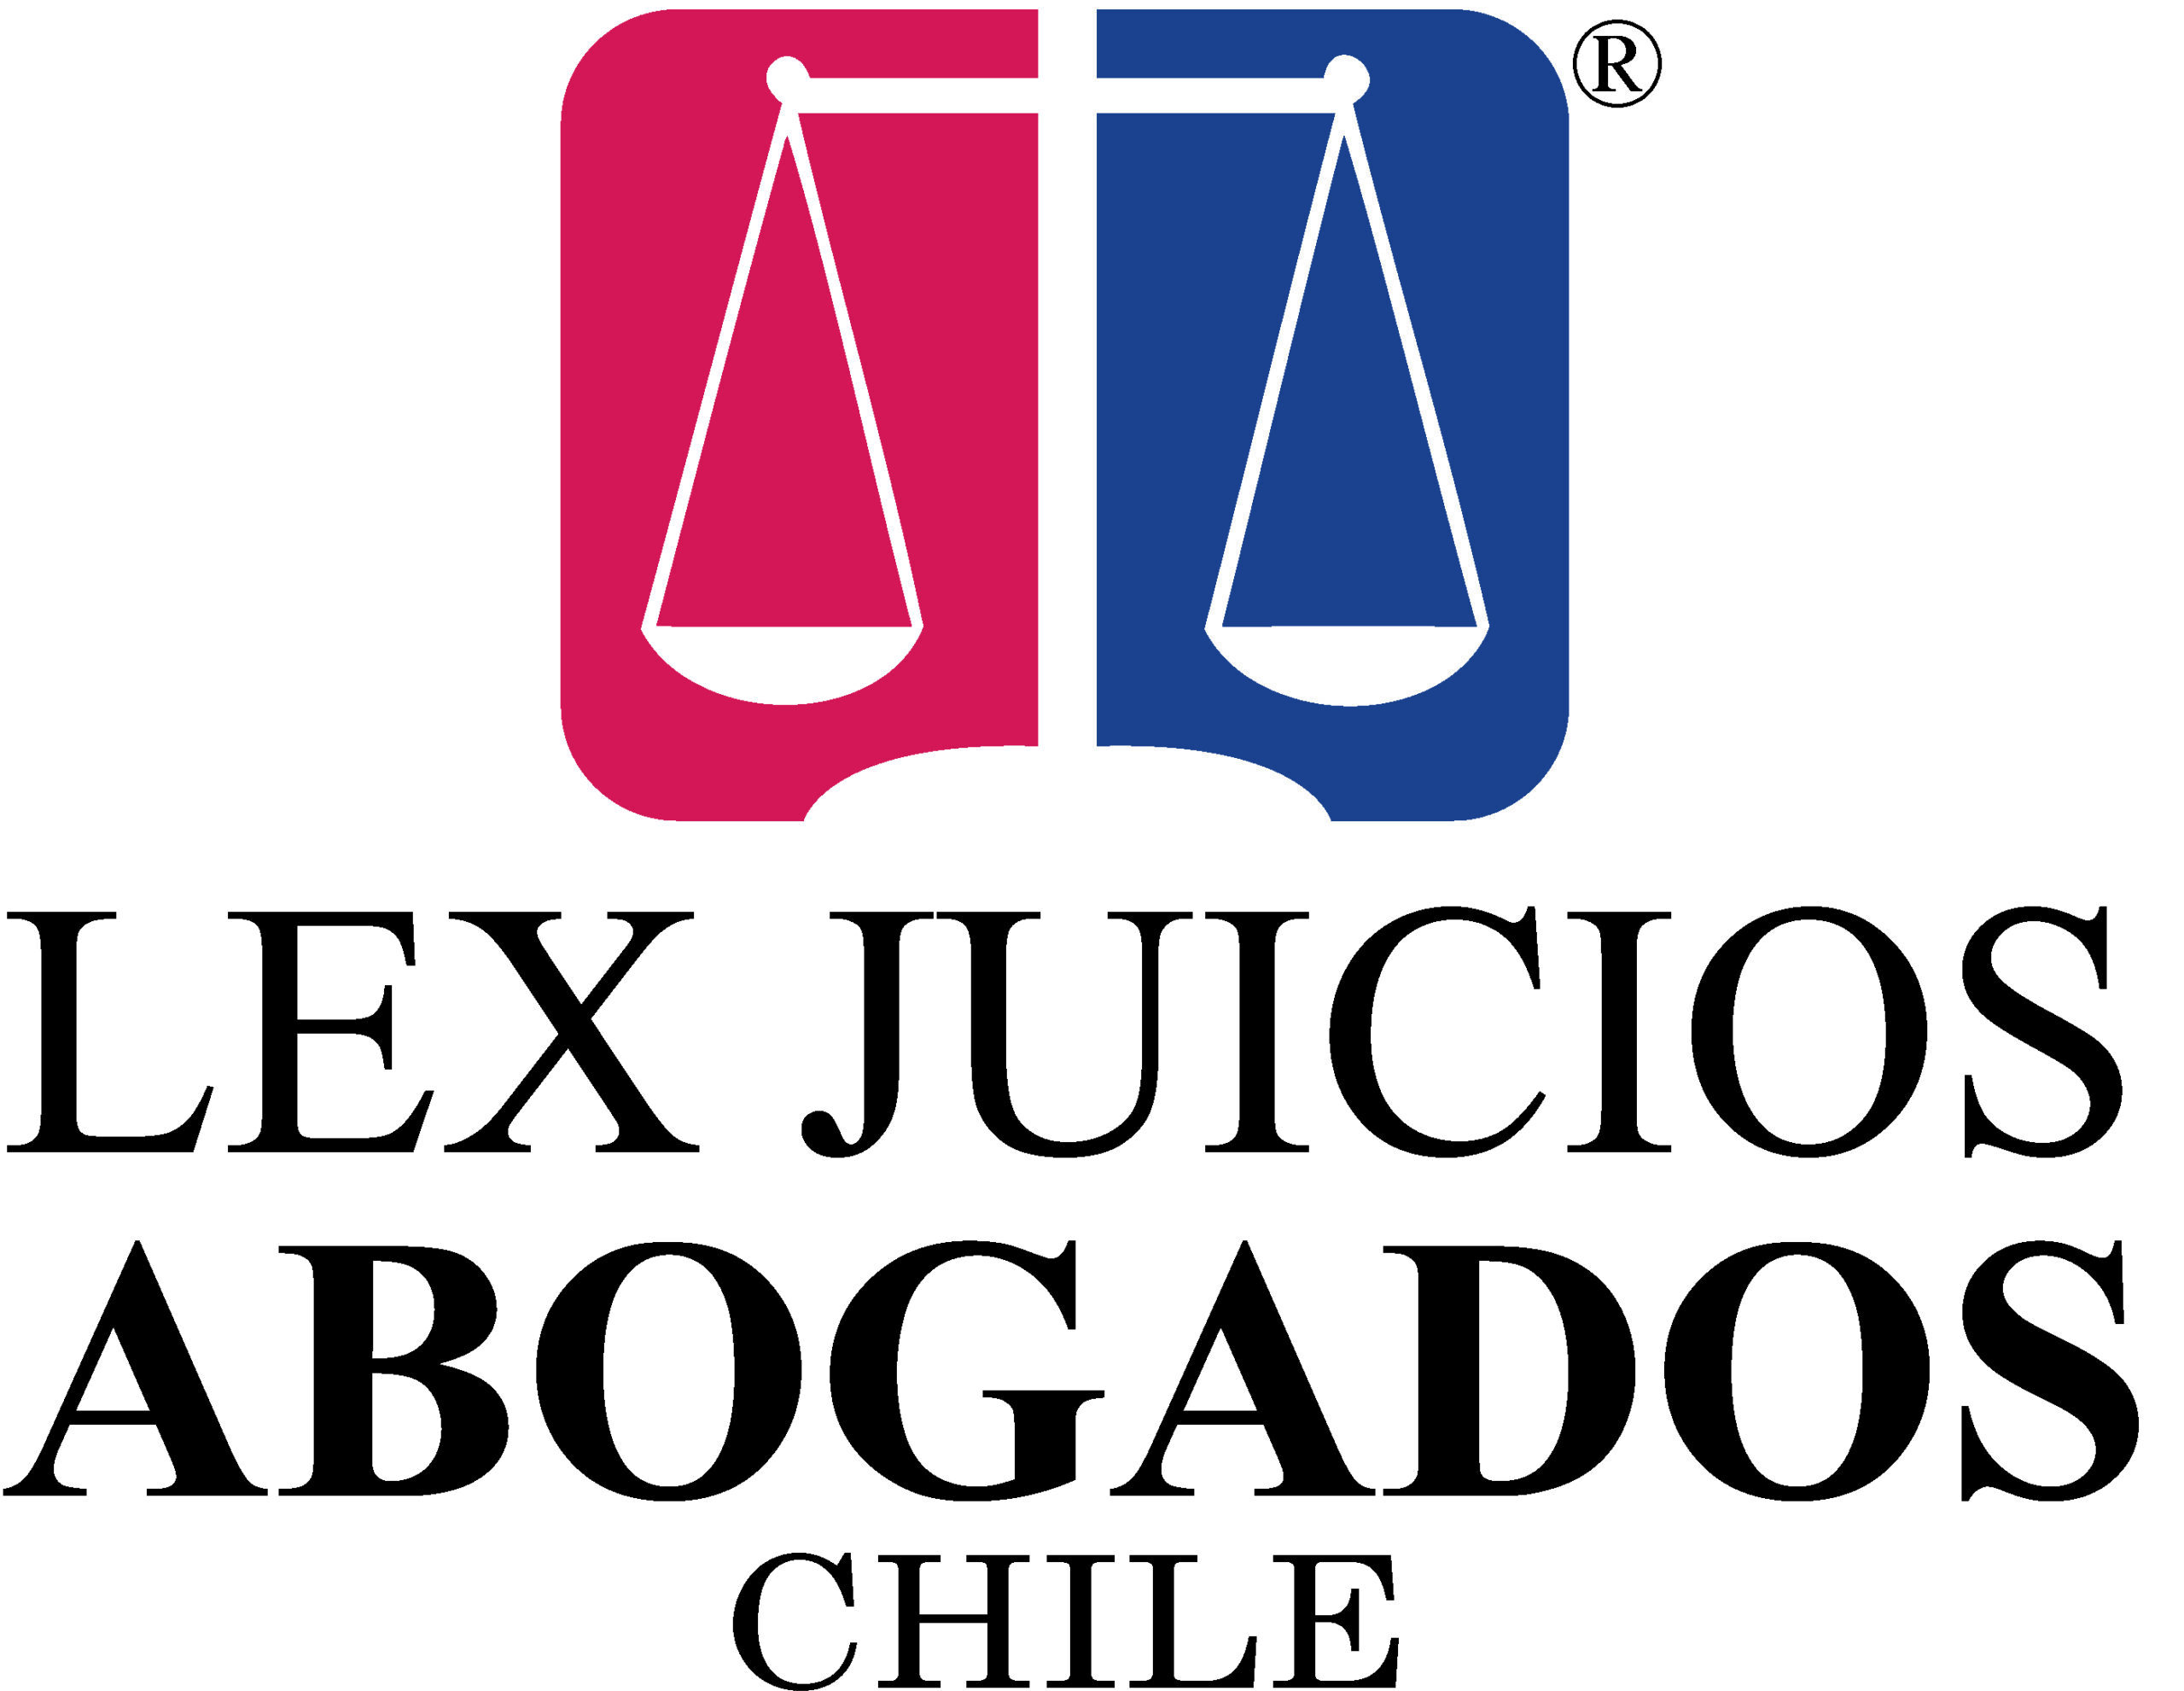 Abogados Civiles en Santiago, Penal, Laboral, tributario. Tel.: 264655483